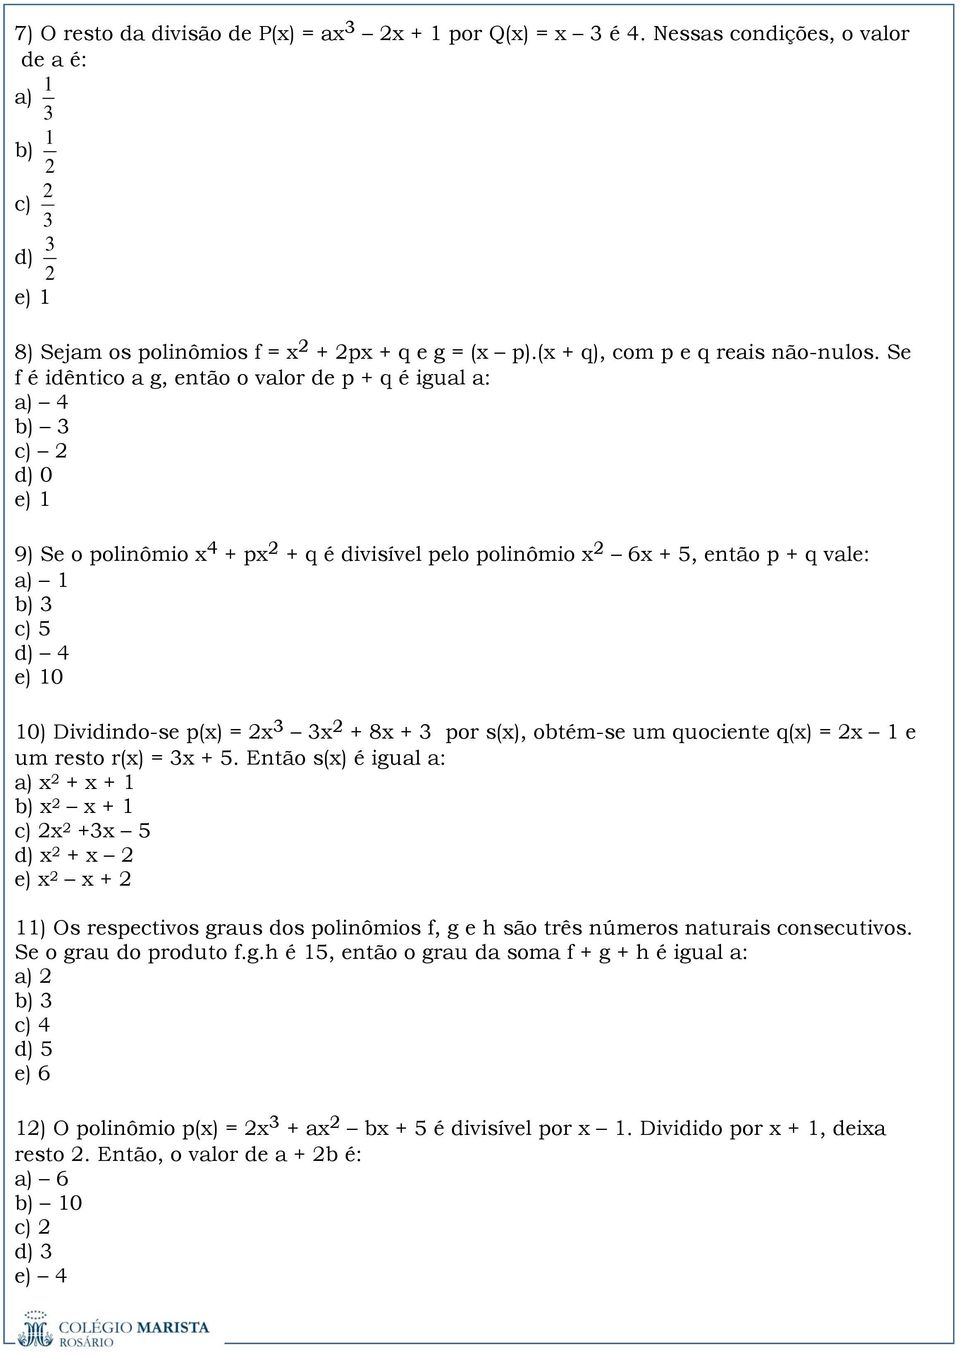 Dividindo-se p(x) = x x + 8x + por s(x), obtém-se um quociente q(x) = x 1 e um resto r(x) = x + 5.